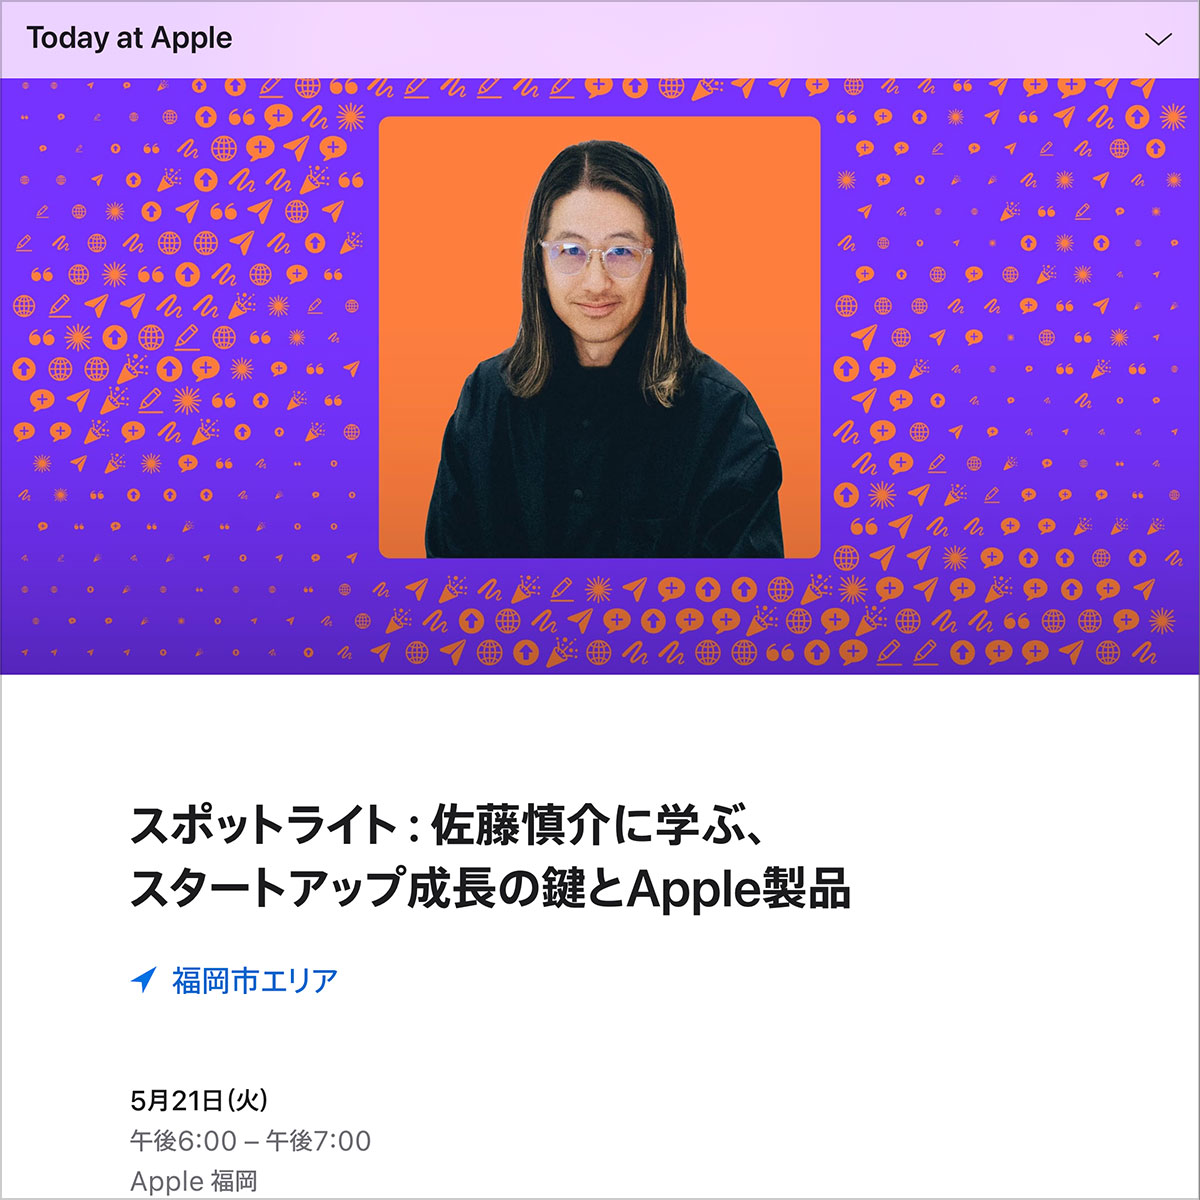 スポットライト：佐藤慎介に学ぶ、スタートアップ成長の鍵とApple製品